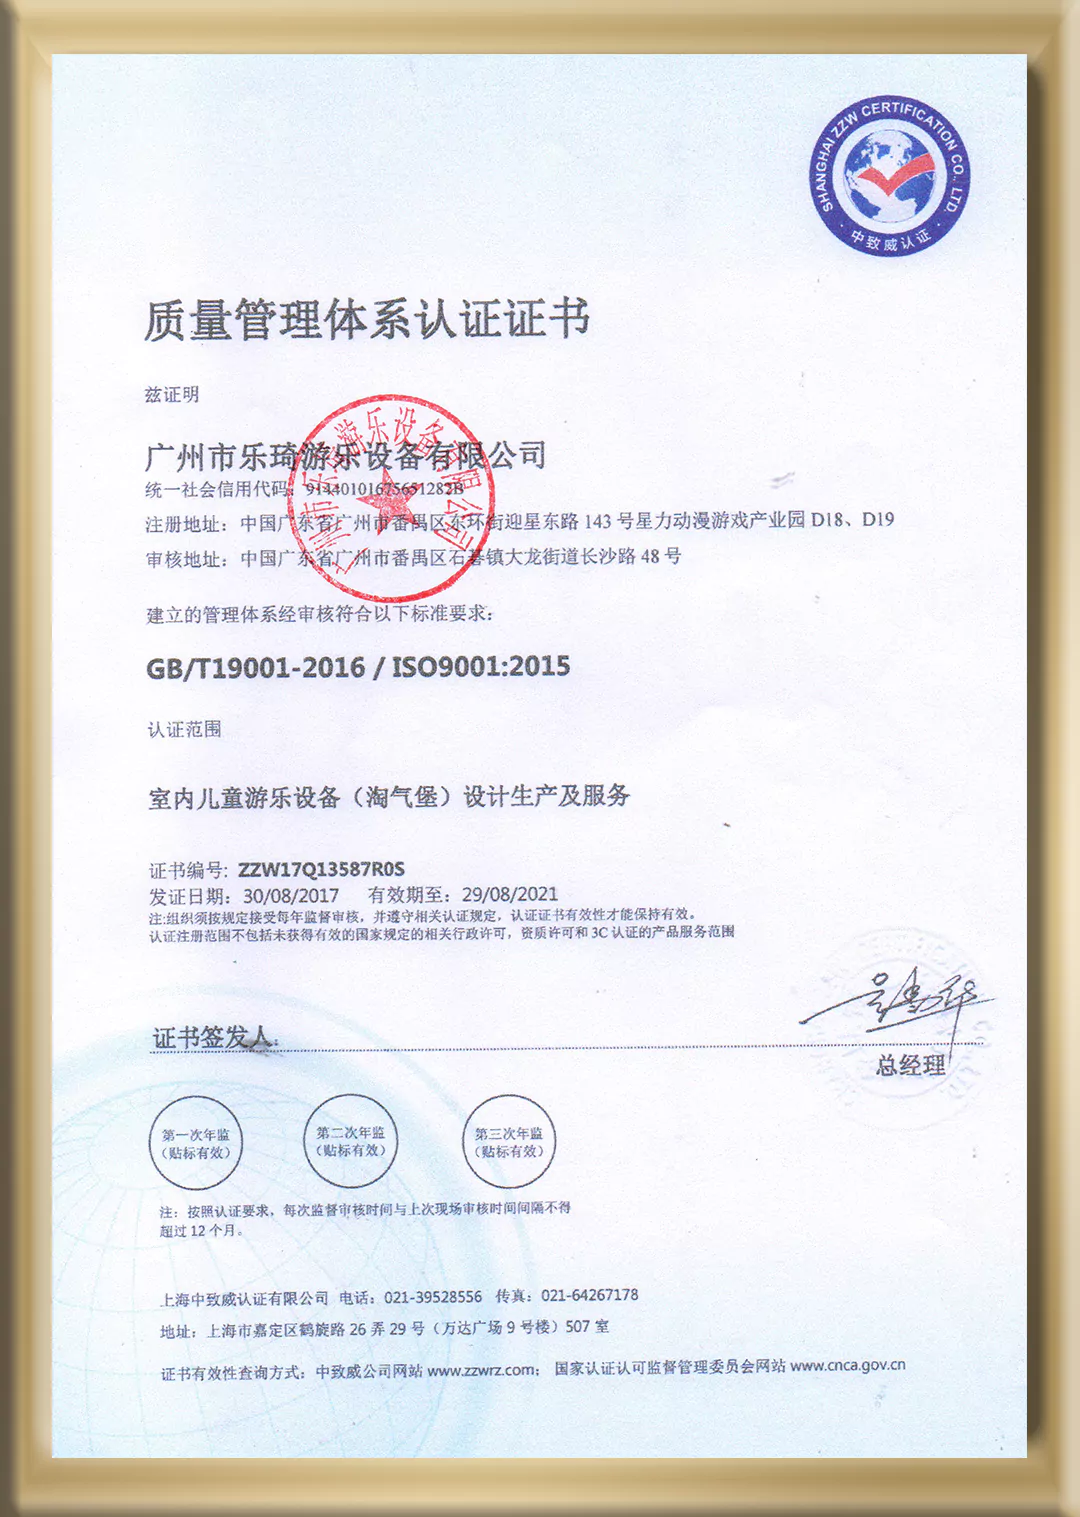 7-Certificate-1